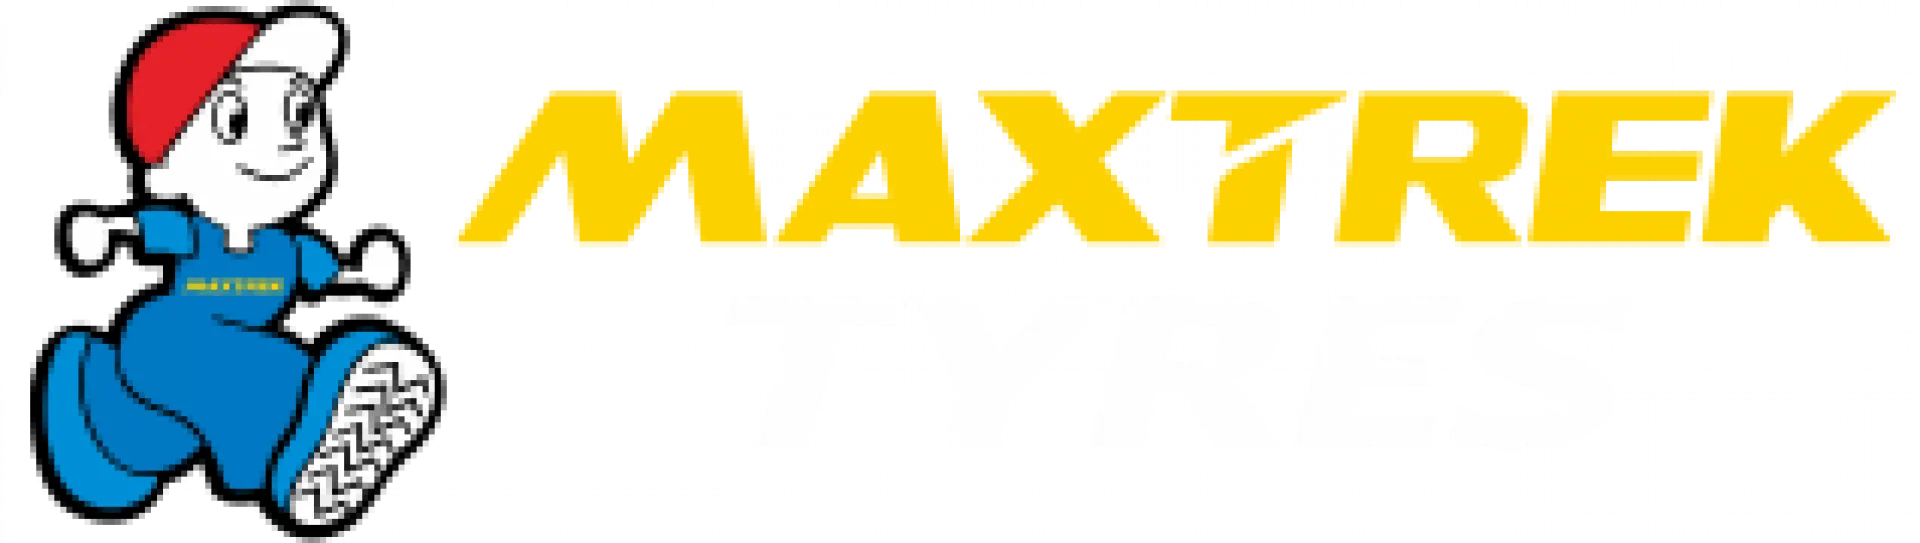 Maxtrek